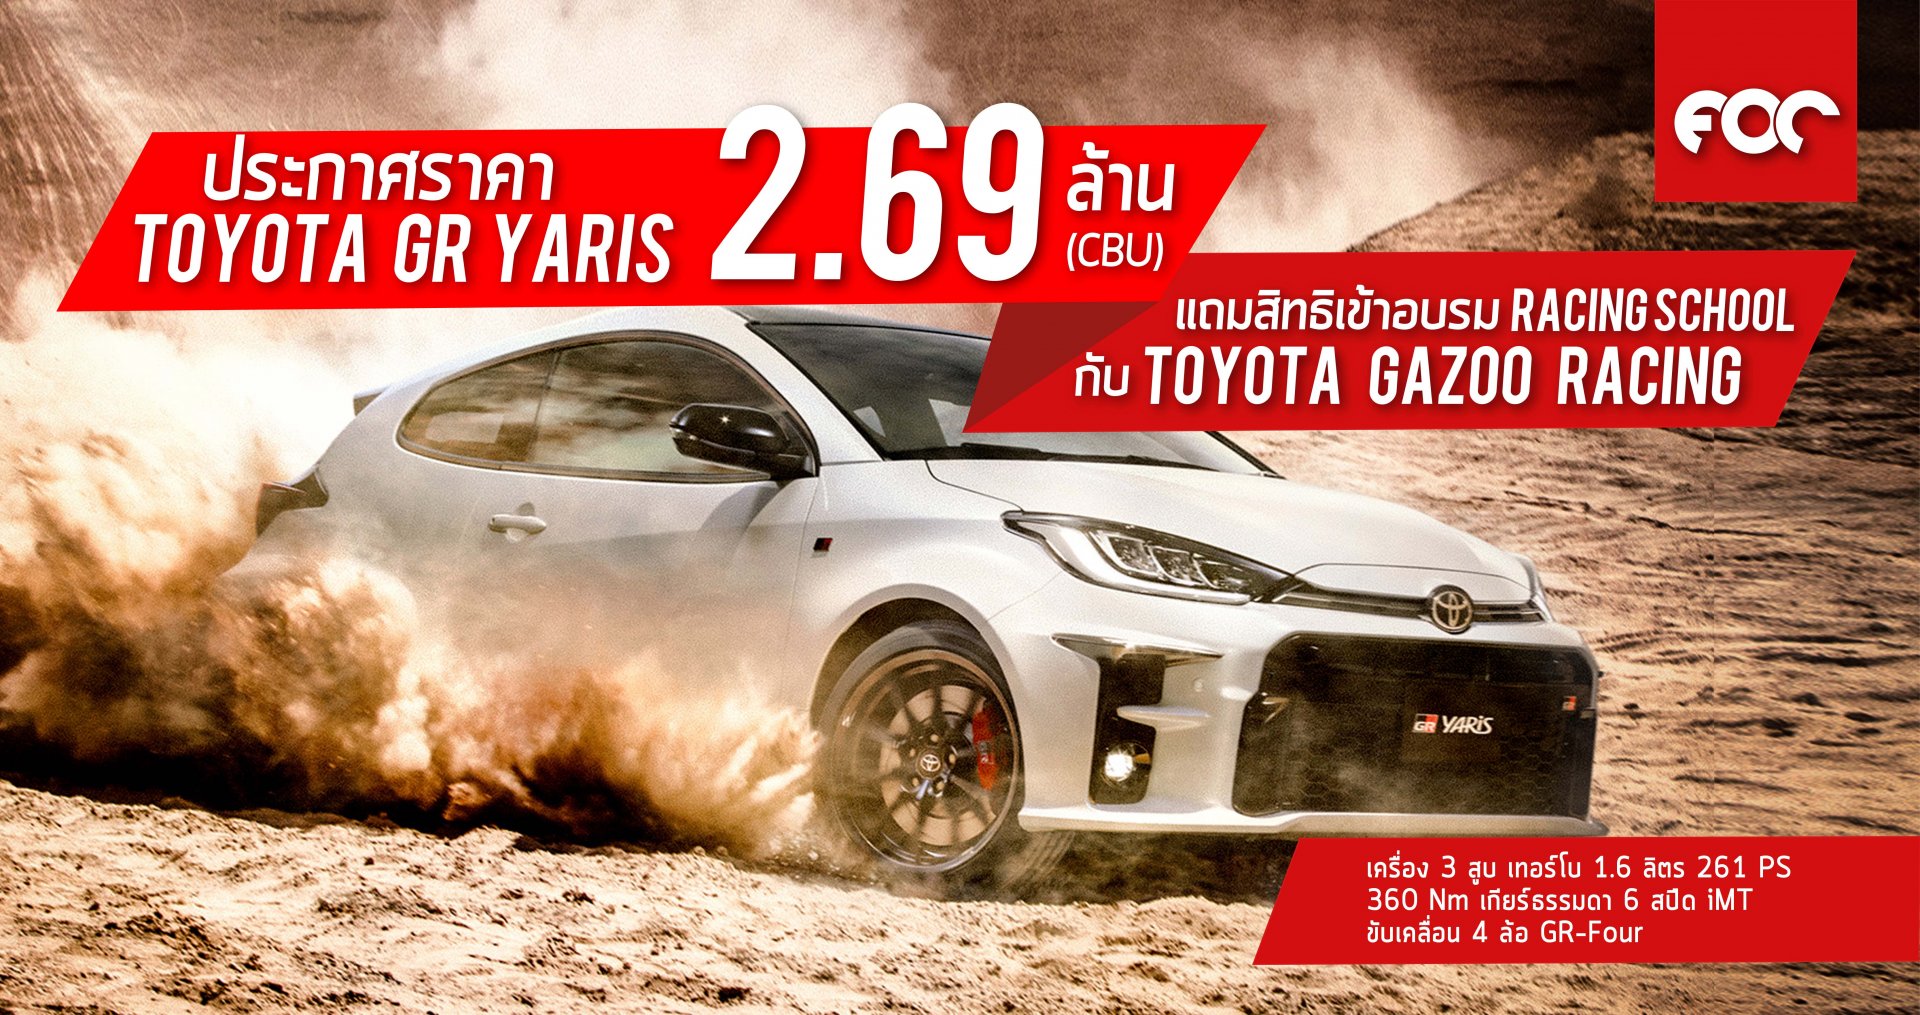 โตโยต้า ประกาศราคา Toyota GR Yaris 2.69 ล้าน (CBU) แถมสิทธิเข้าอบรม Racing School เต็มรูปแบบ